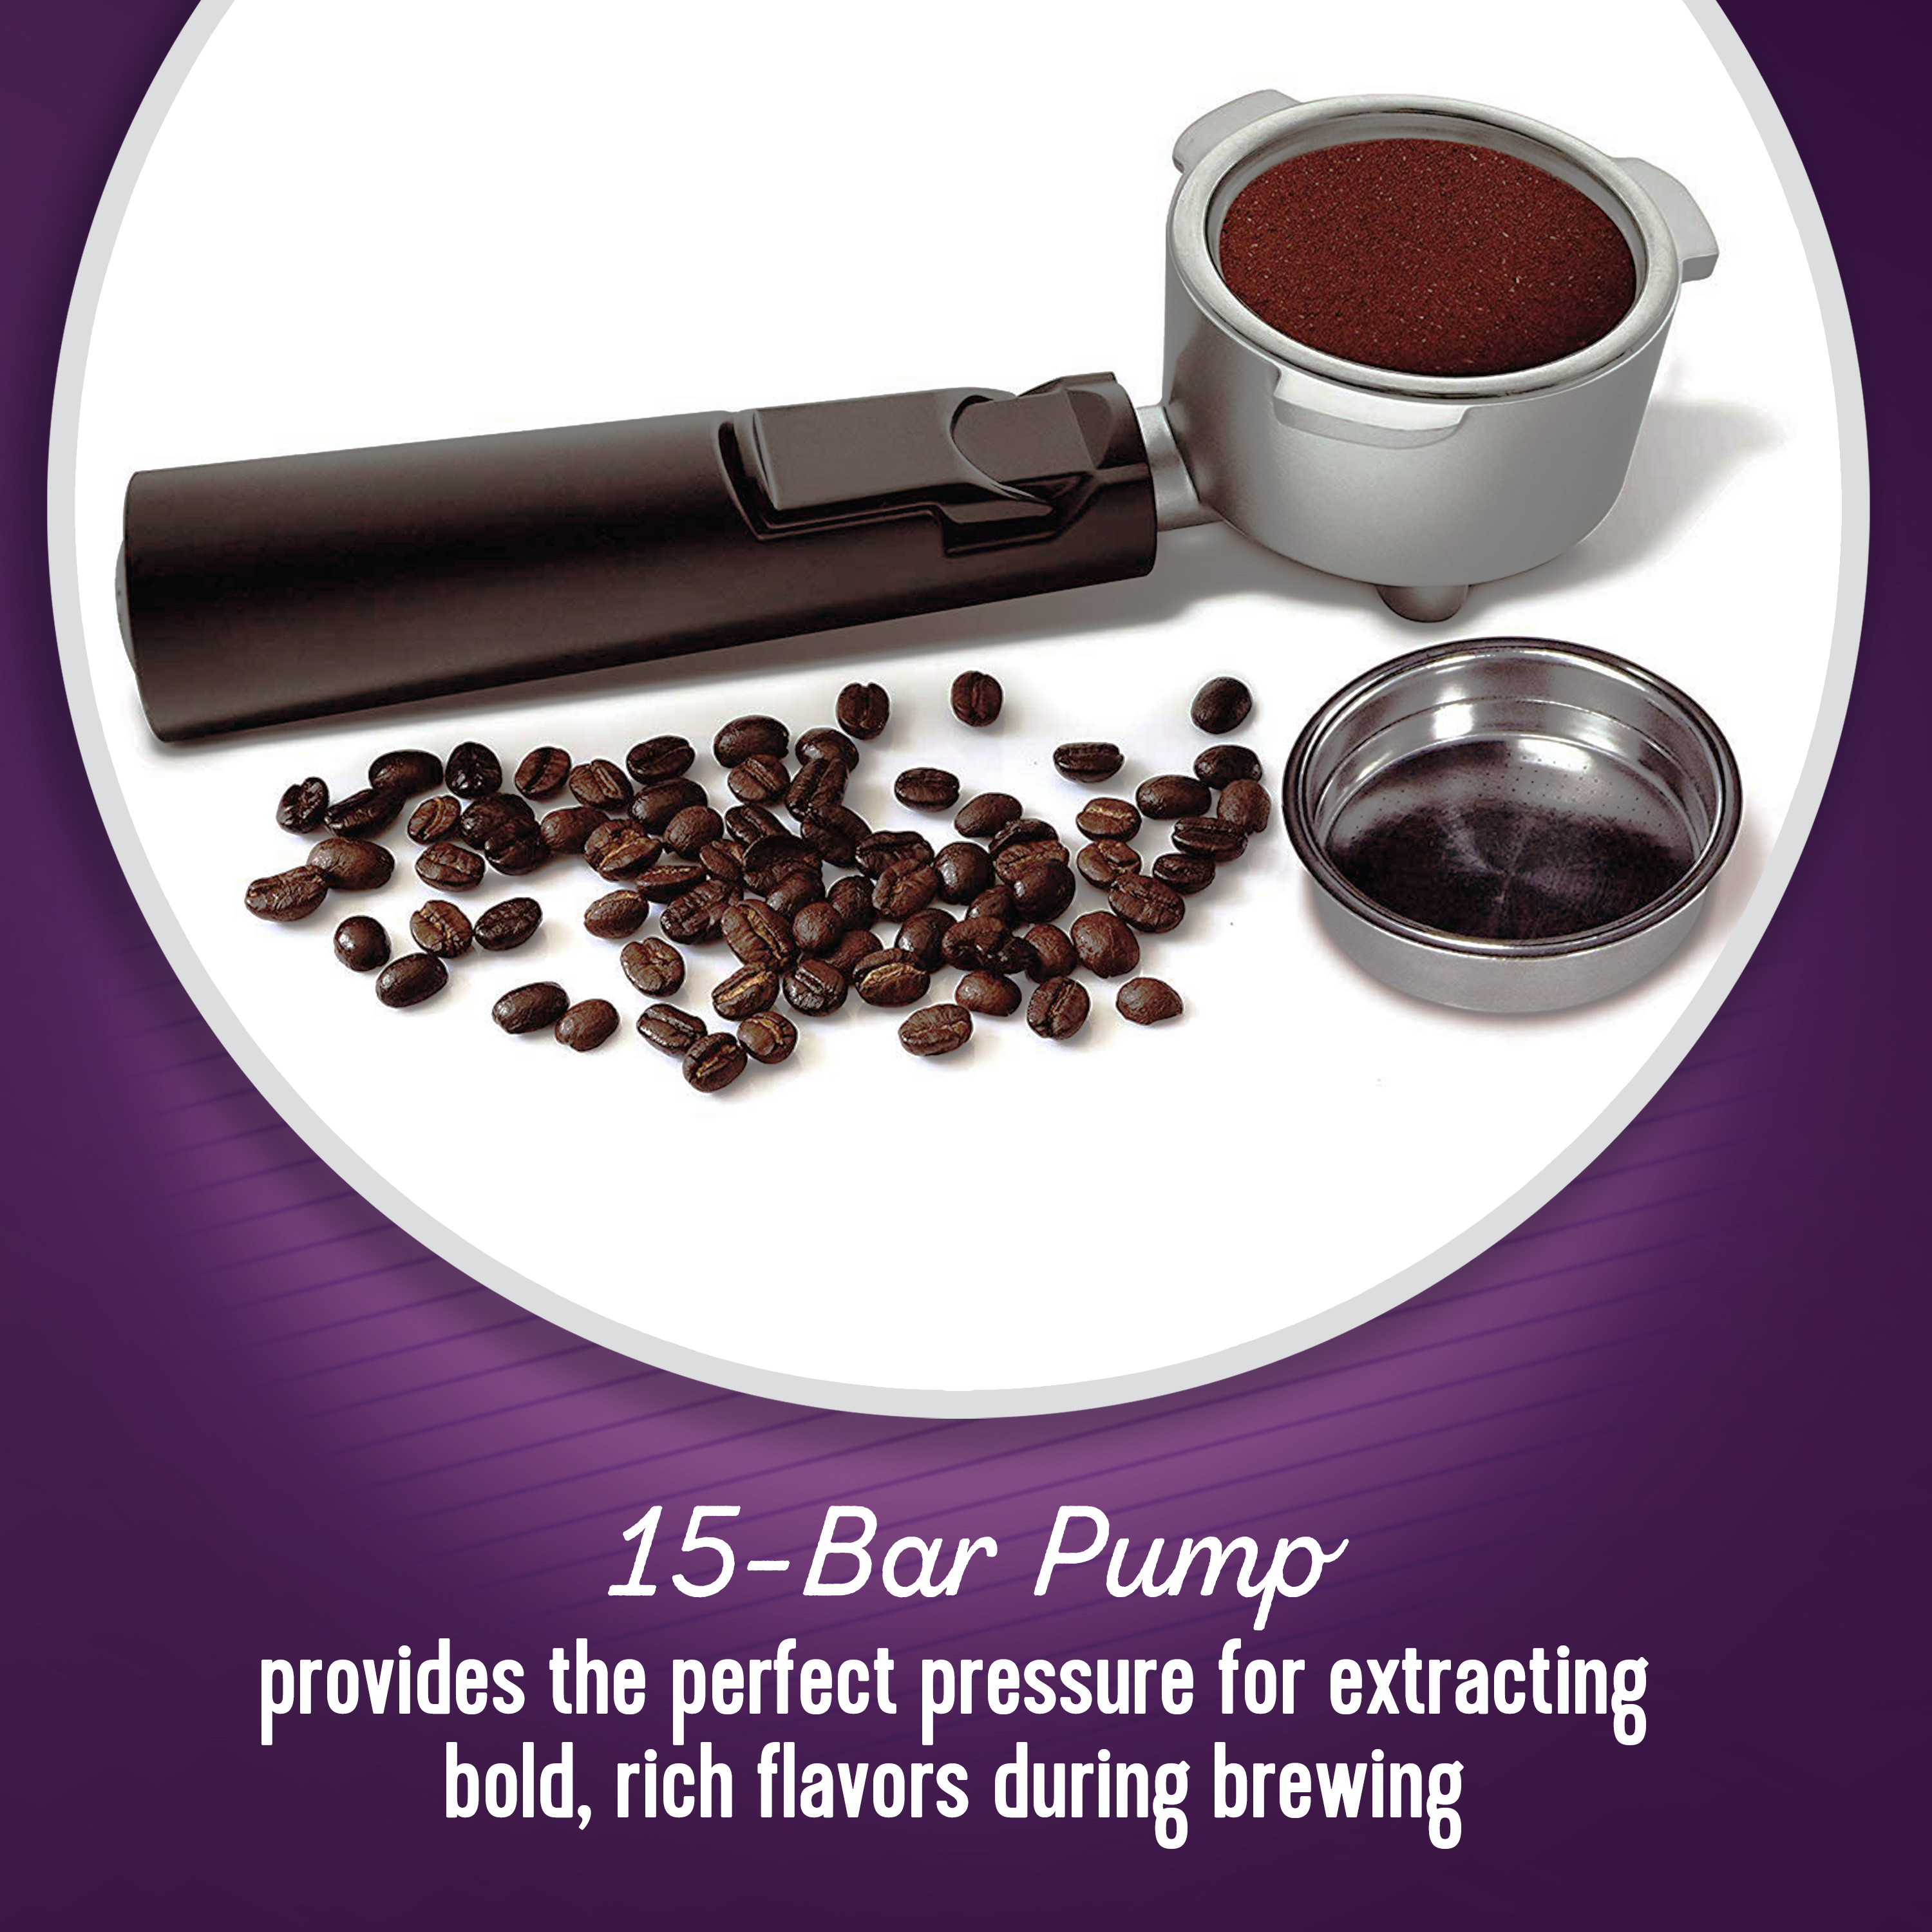 Mr. Coffee New Cafe Barista Black & Silver Premium Espresso/Latte/Cappuccino Maker - image 4 of 10